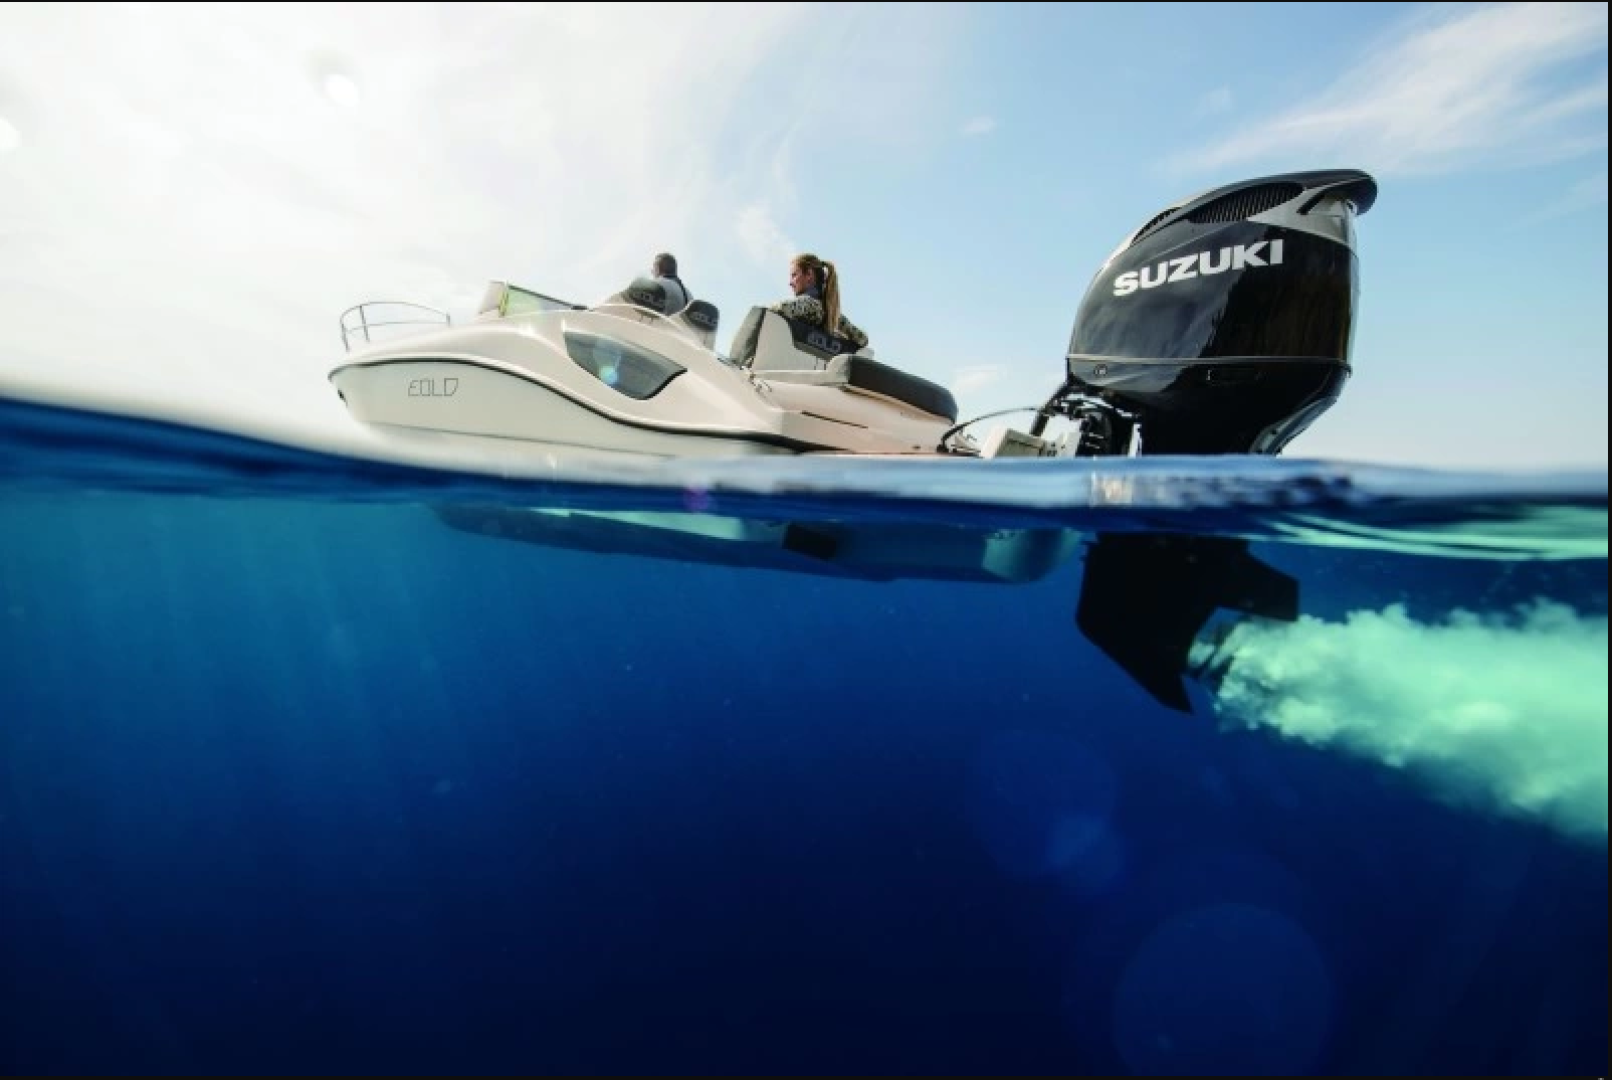 The Ultimate Outboard Motor: Suzuki al servizio dell’ambiente